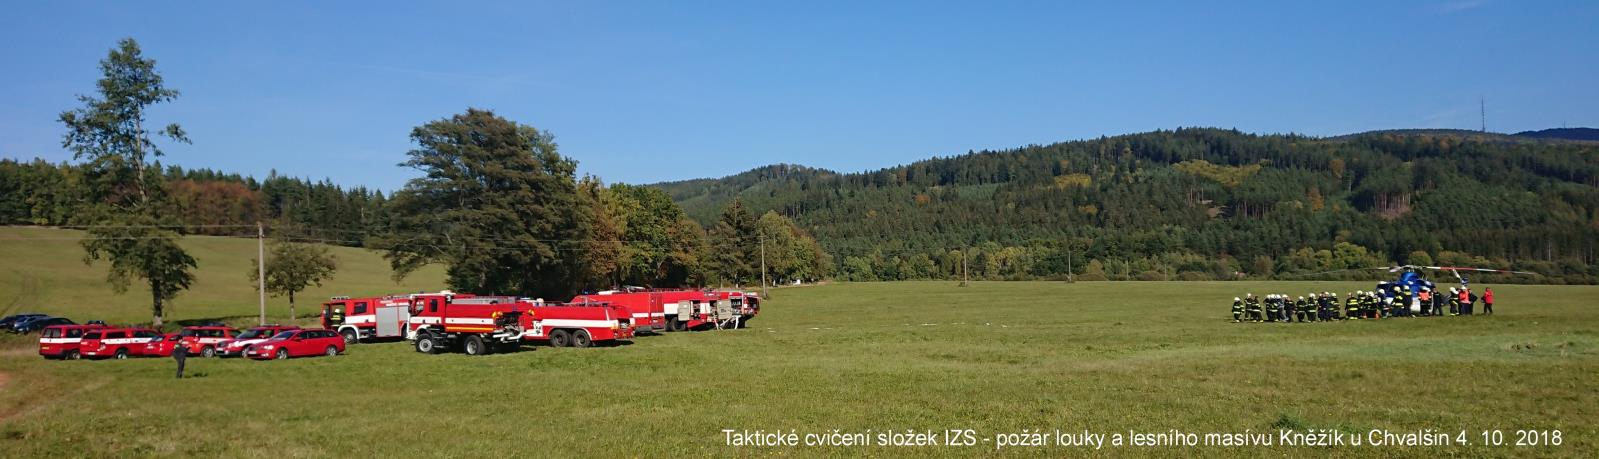 Cvičení - požár lesa, Chvalšiny - 4. 10. 2018 (2).jpg